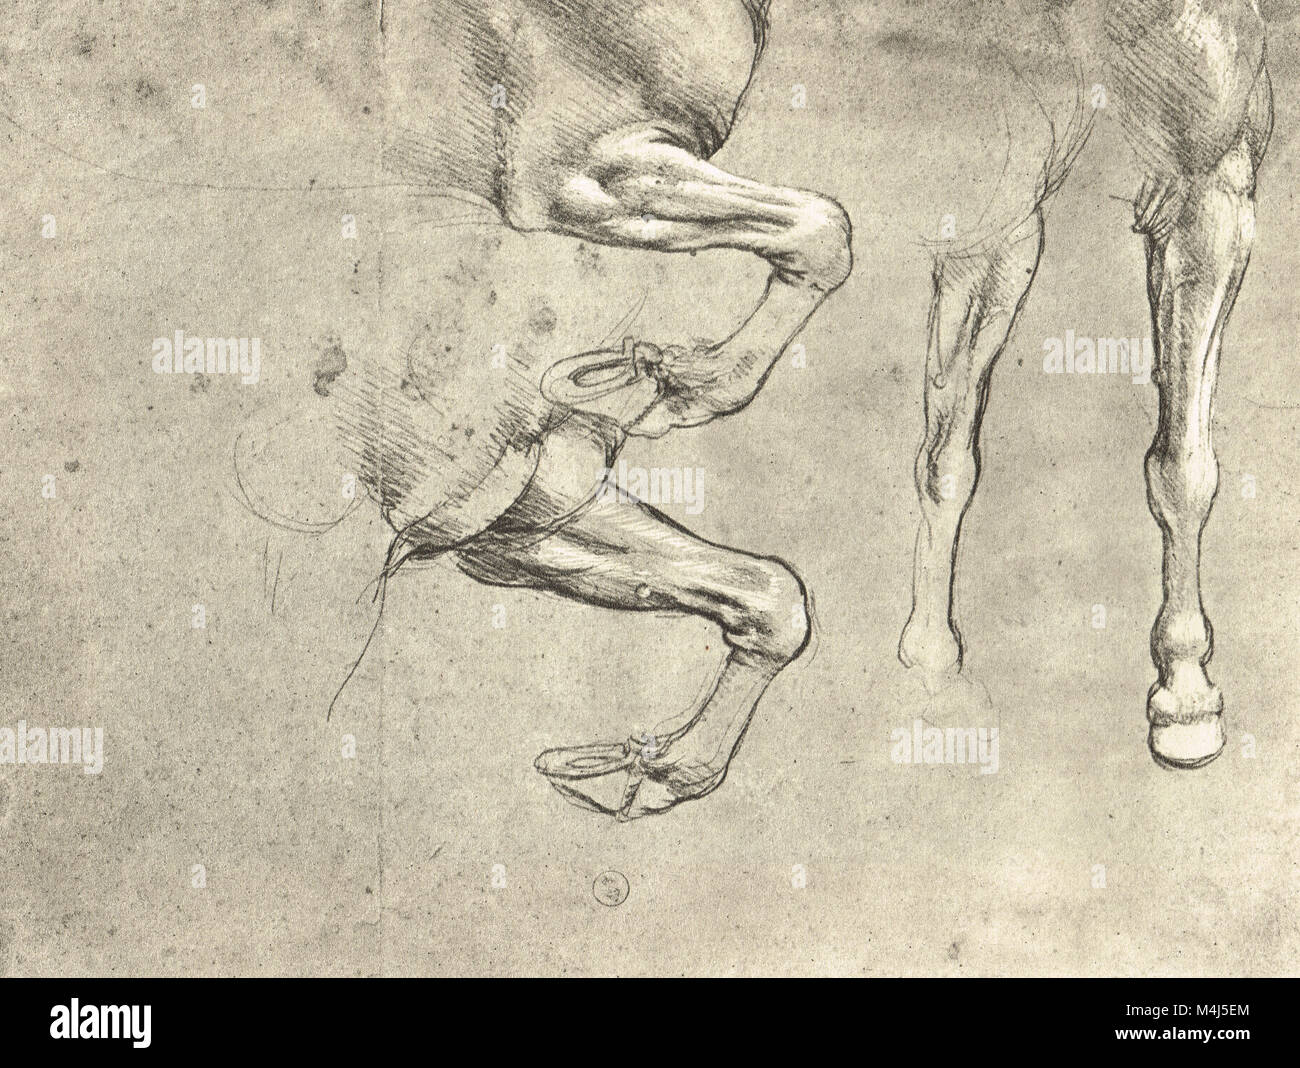 Quatre études de jambes des chevaux, chevaux de dessin anatomique, dessiné par Léonard de Vinci, 1452-1519 Banque D'Images